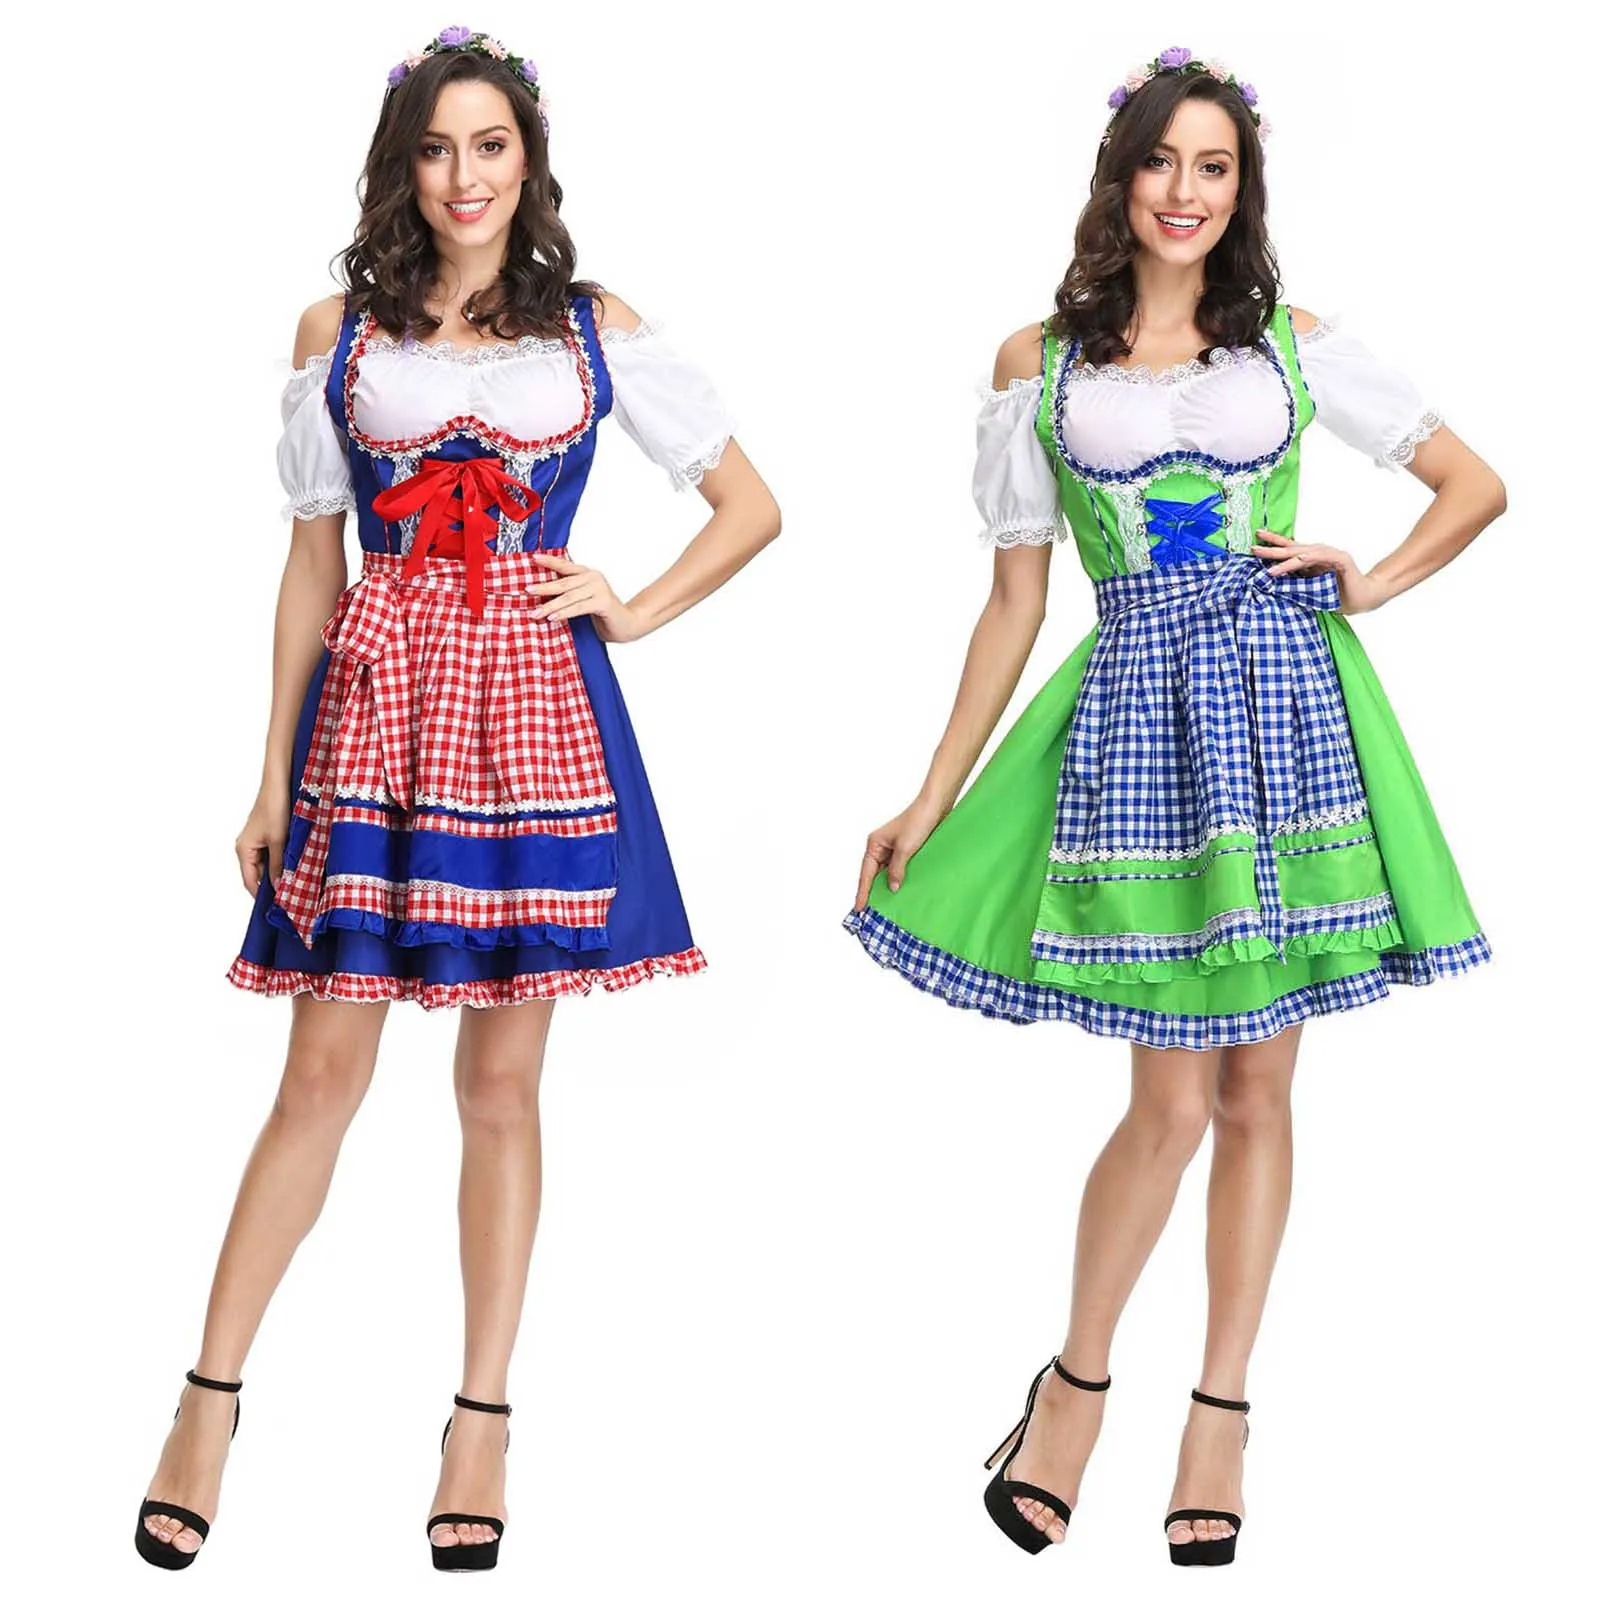 

Женское сексуальное платье на Октоберфест, женское баварское платье, официантка, костюм служанки, нарядное платье для Хэллоуина, пивной девушки